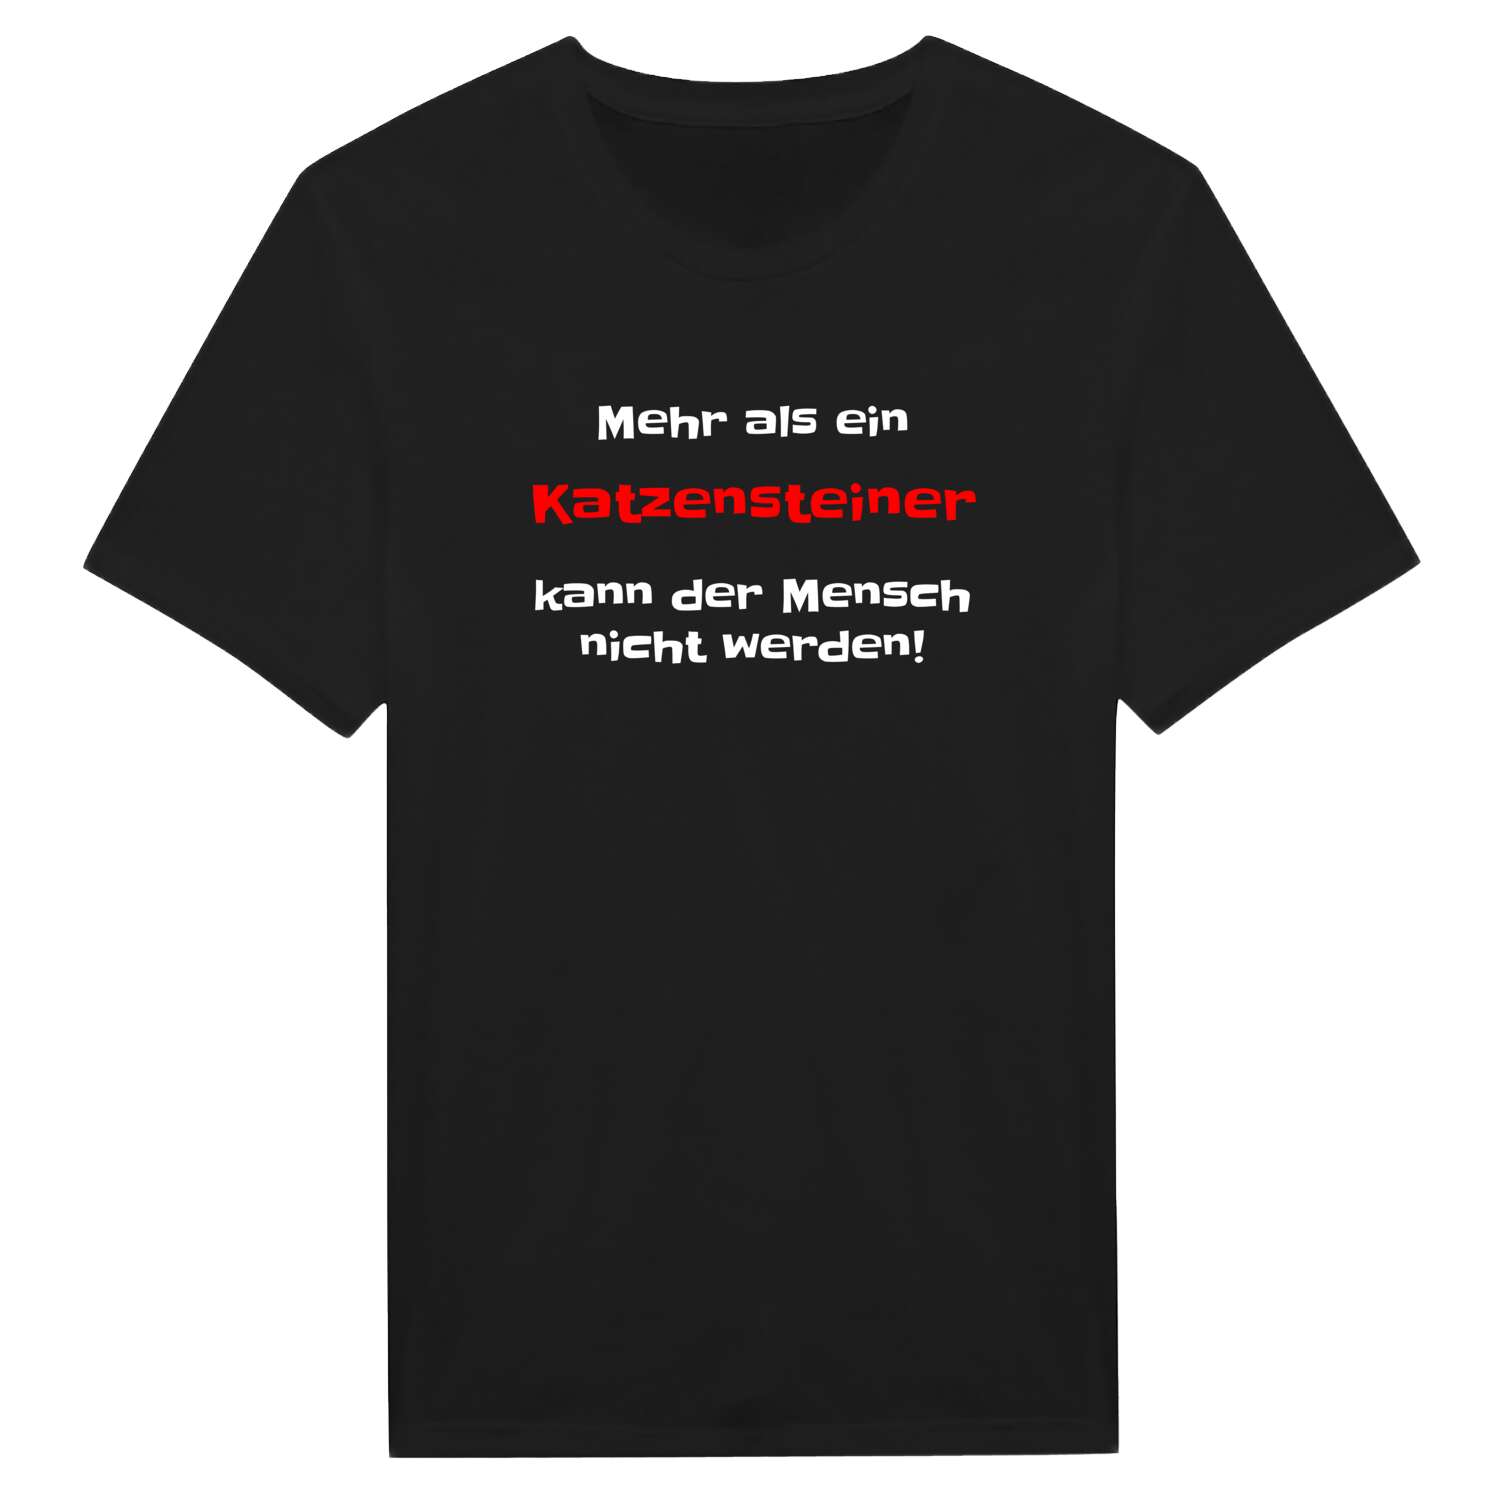 Katzenstein T-Shirt »Mehr als ein«